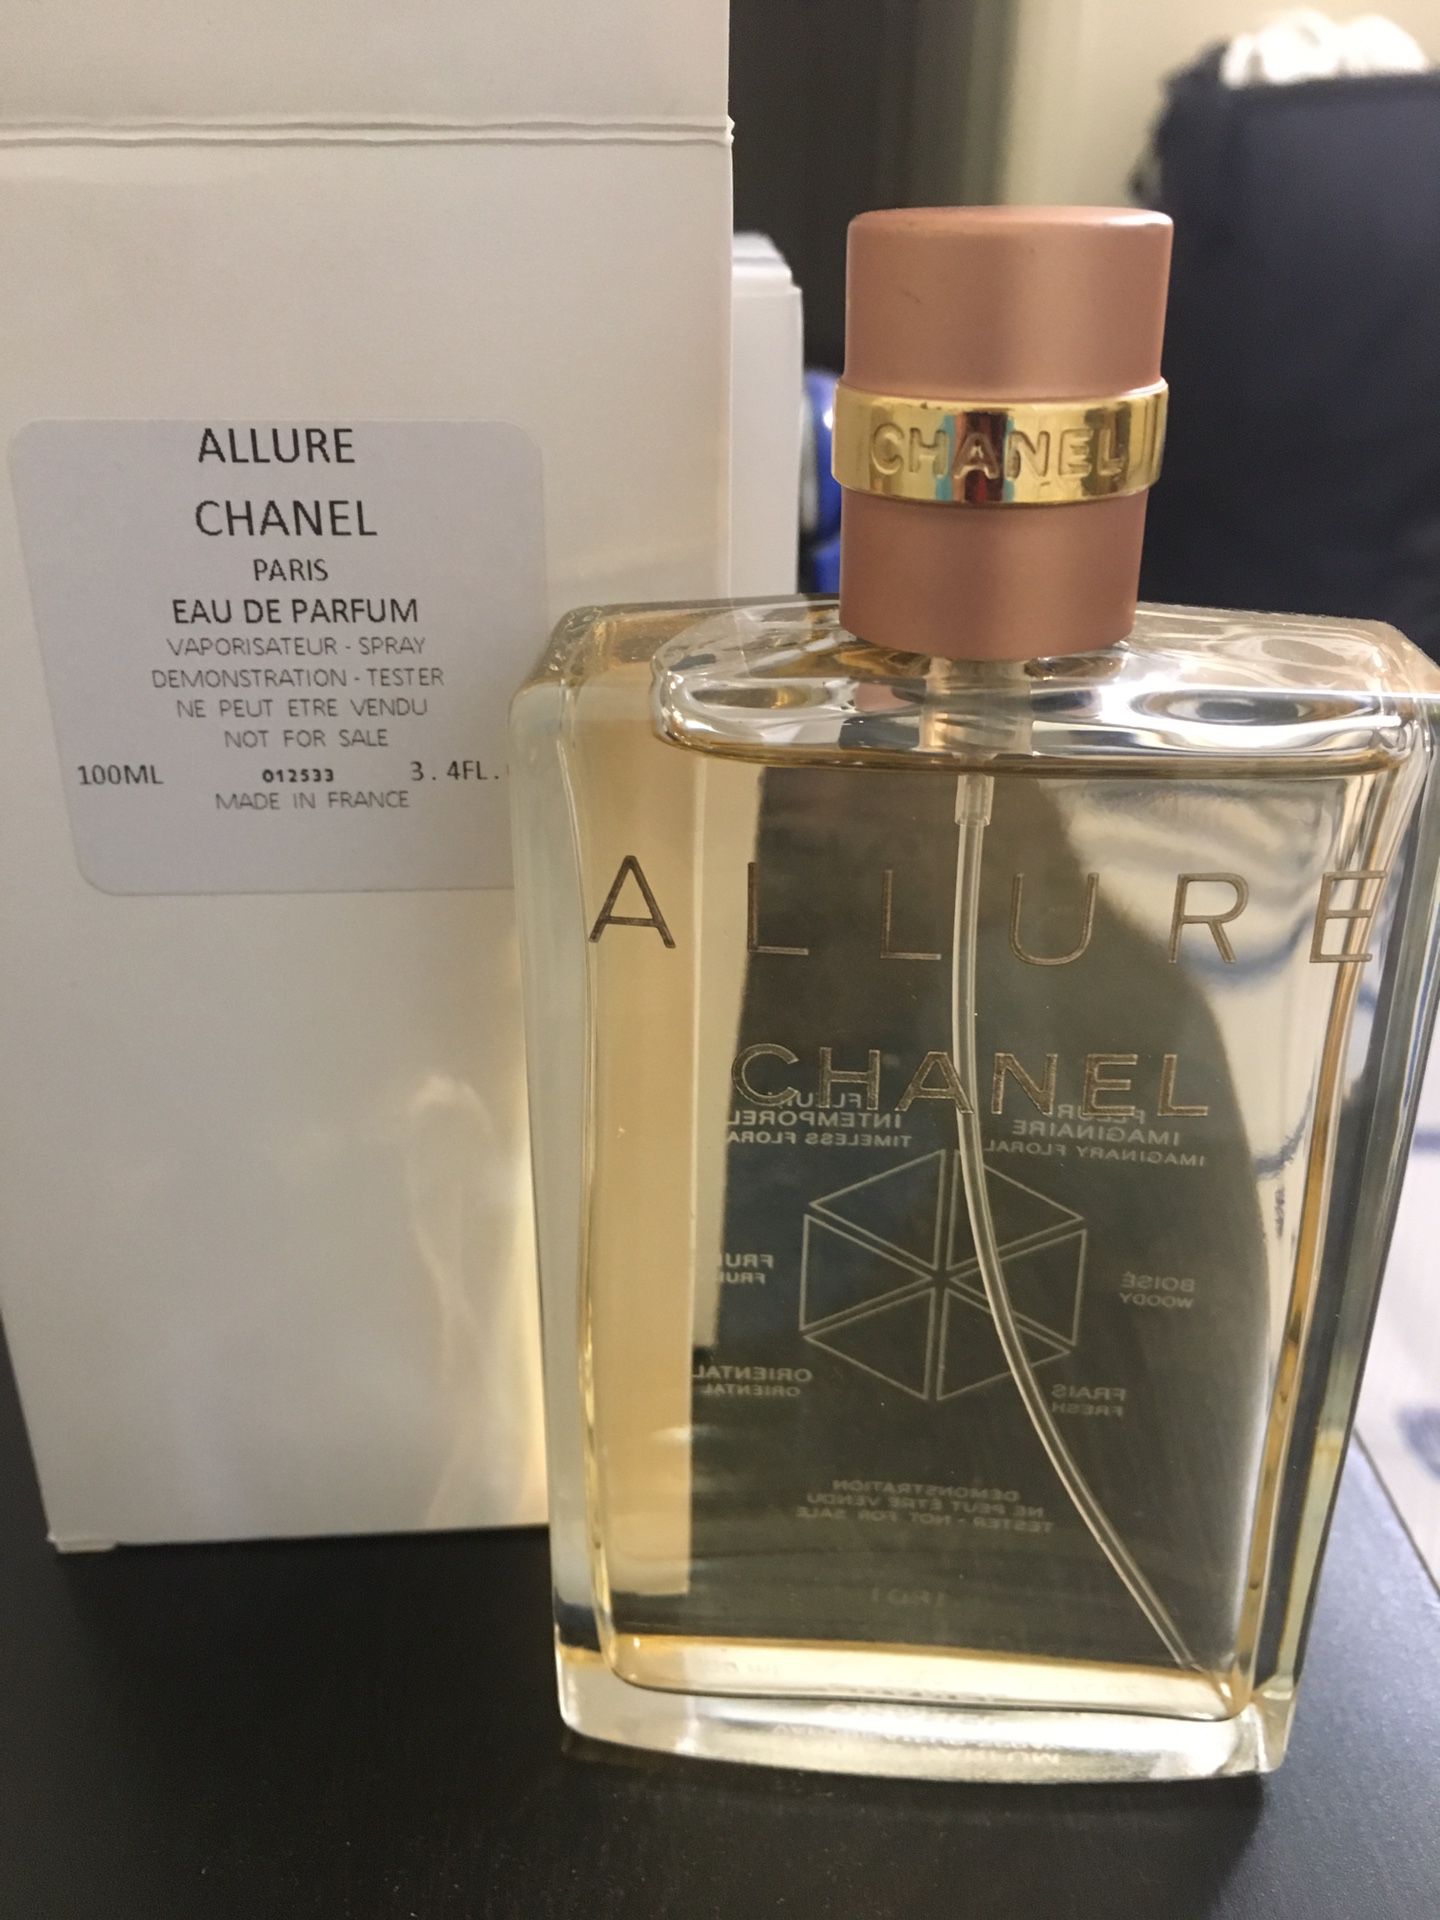 Bleu De Chanel Men's Cologne 5oz big bottle Eau de Parfum Authentic for Sale  in El Paso, TX - OfferUp